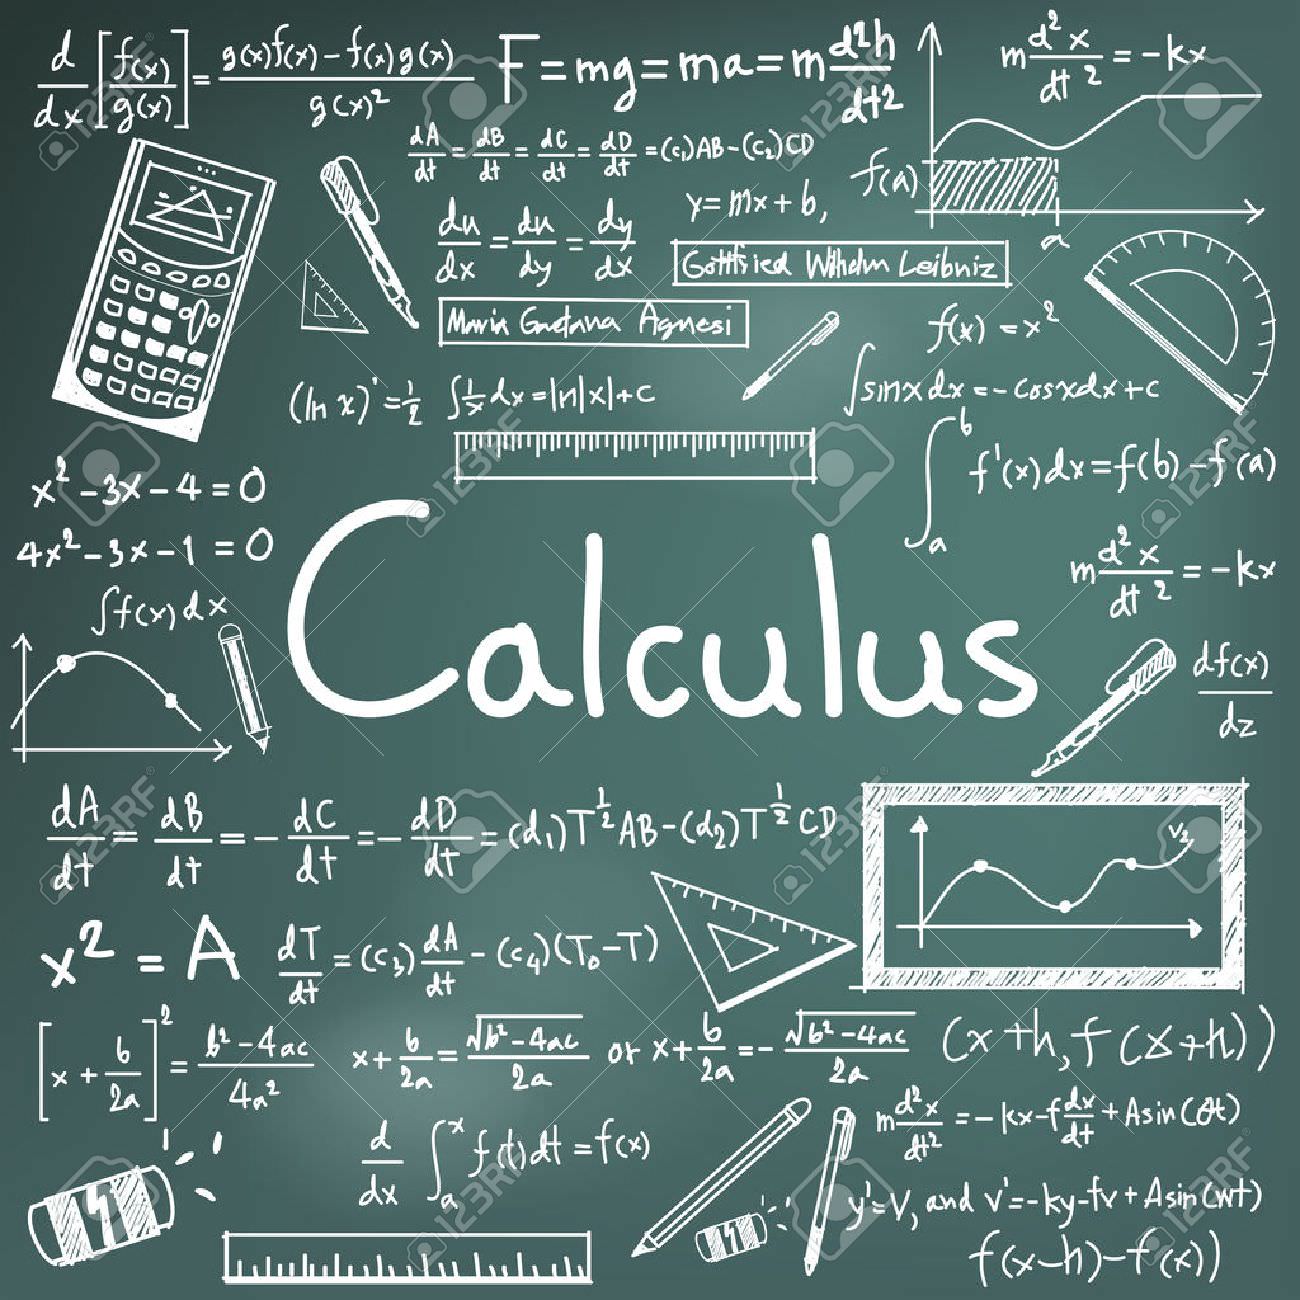 Kalkulus Integral